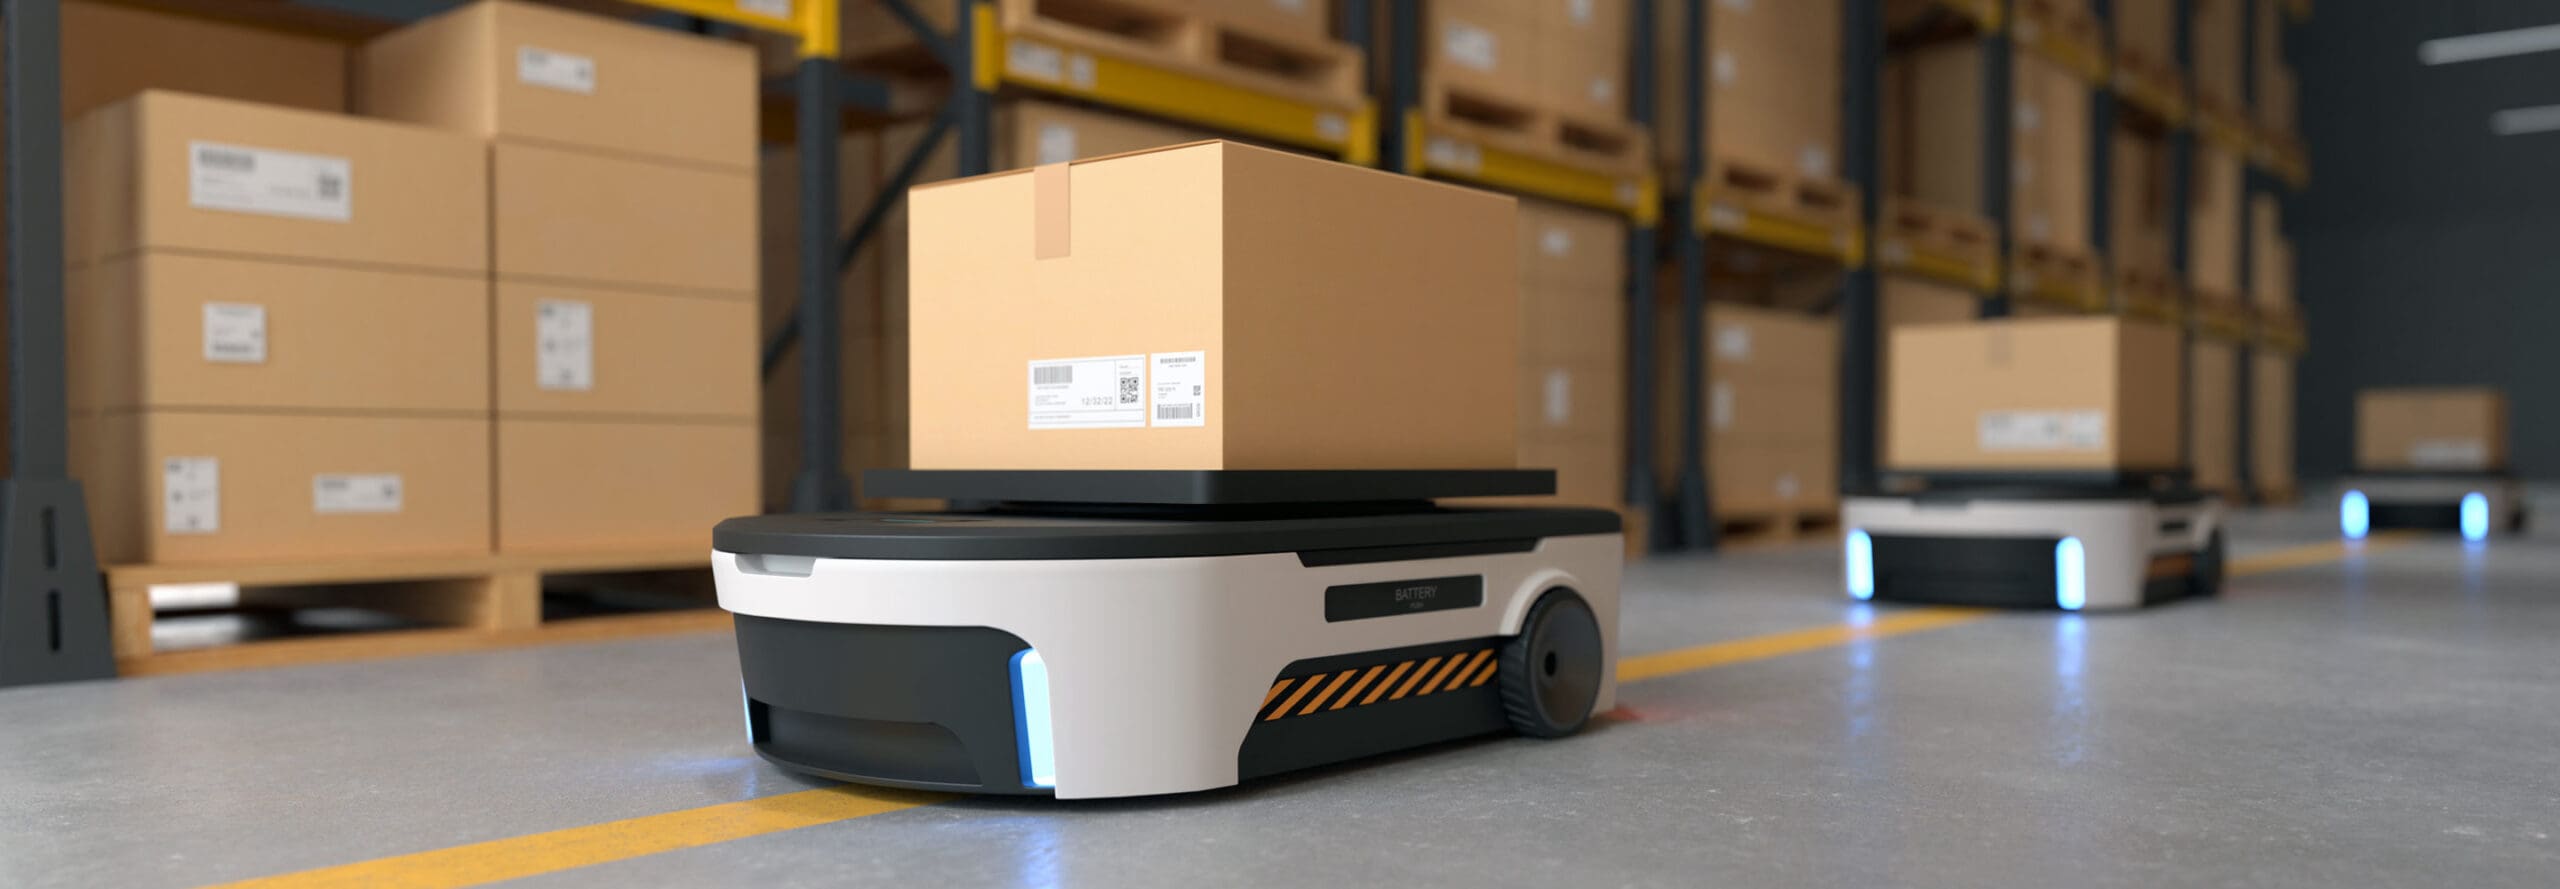 autonomous mobile robots for automated warehouse